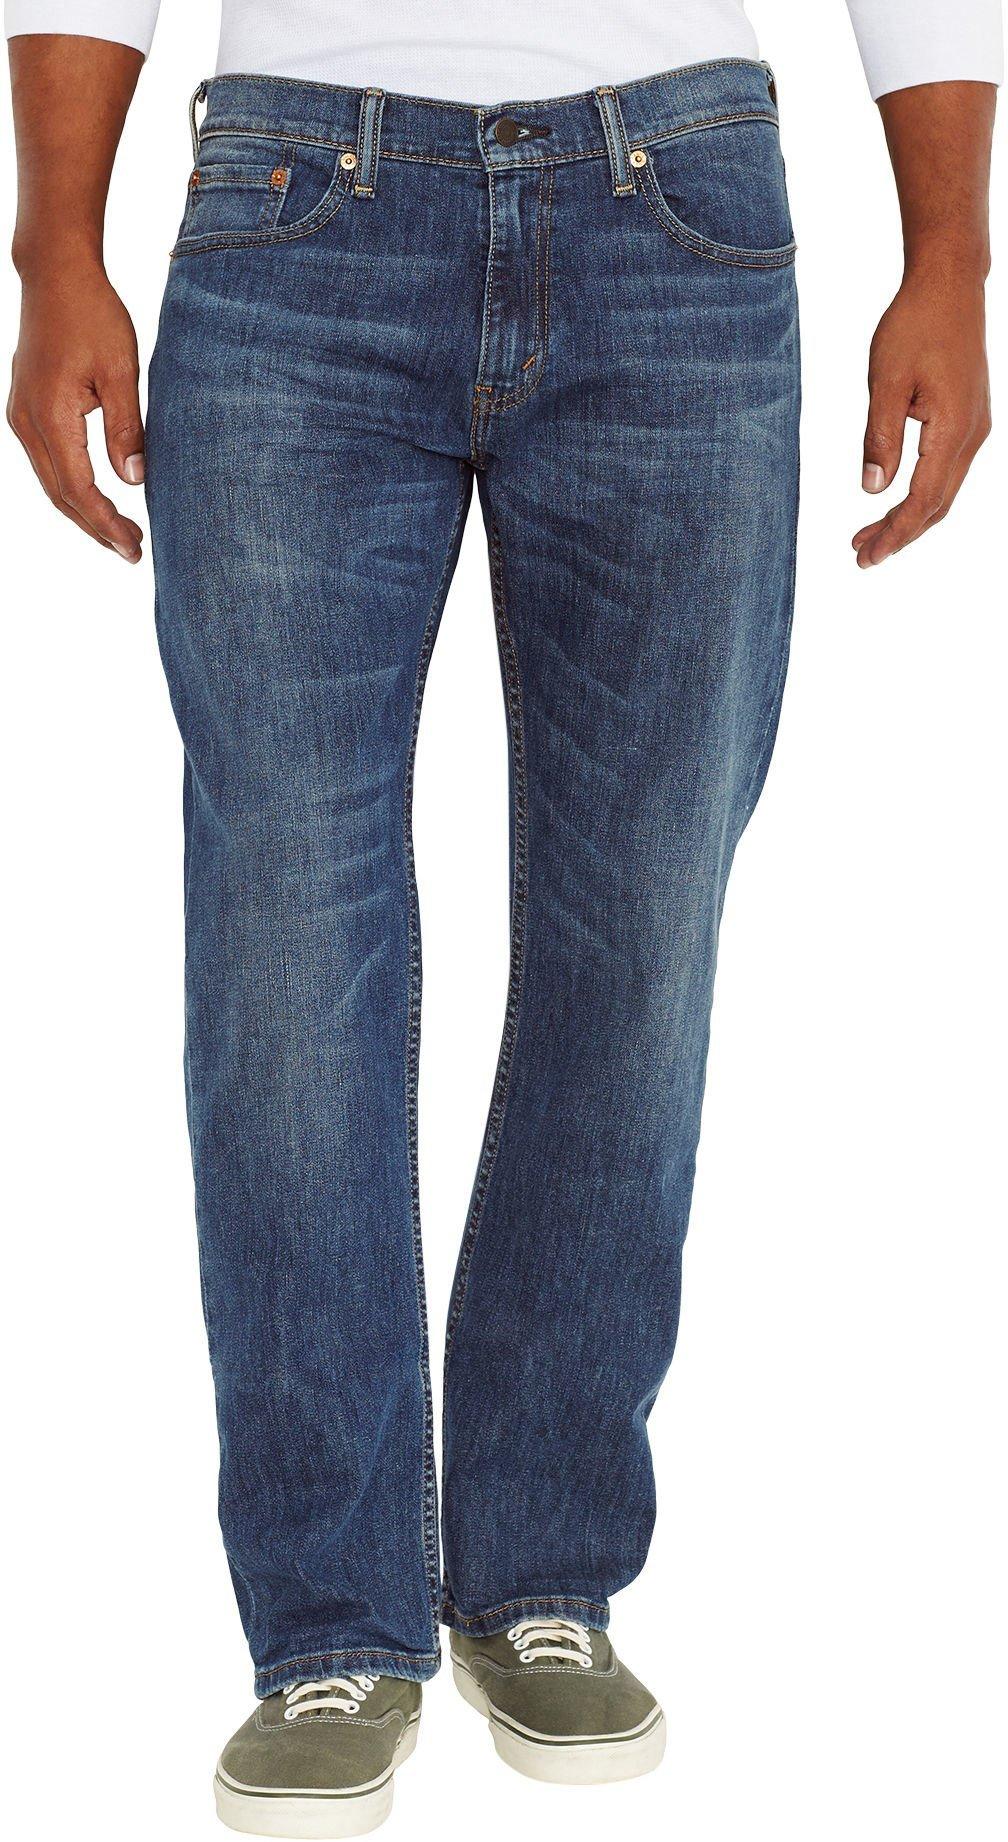 levis 559 jeans